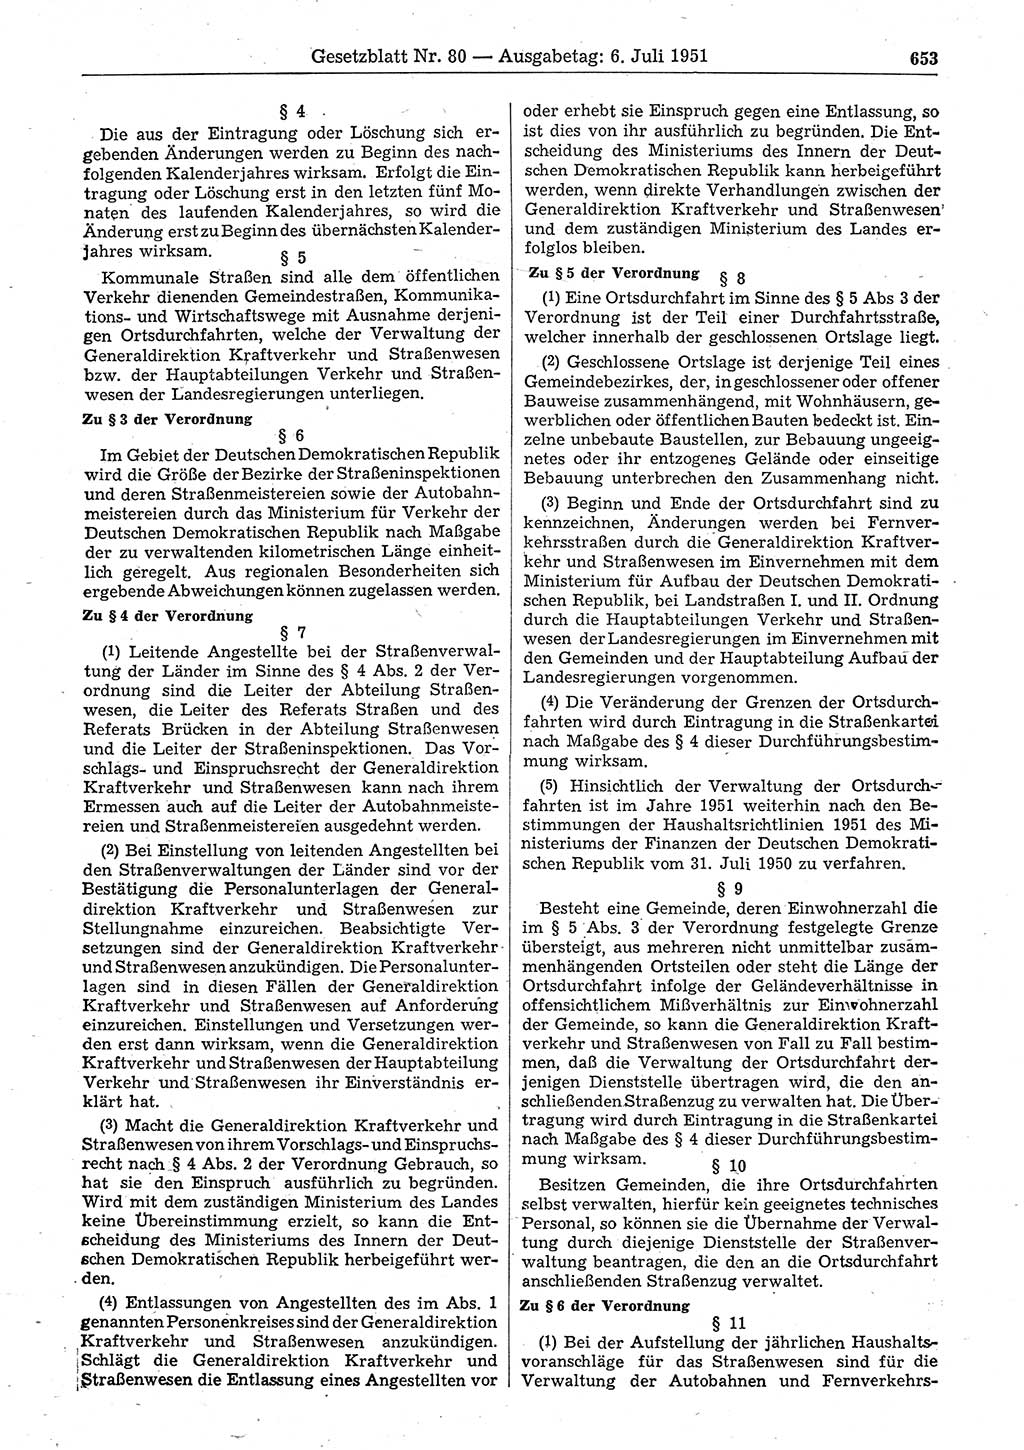 Gesetzblatt (GBl.) der Deutschen Demokratischen Republik (DDR) 1951, Seite 653 (GBl. DDR 1951, S. 653)